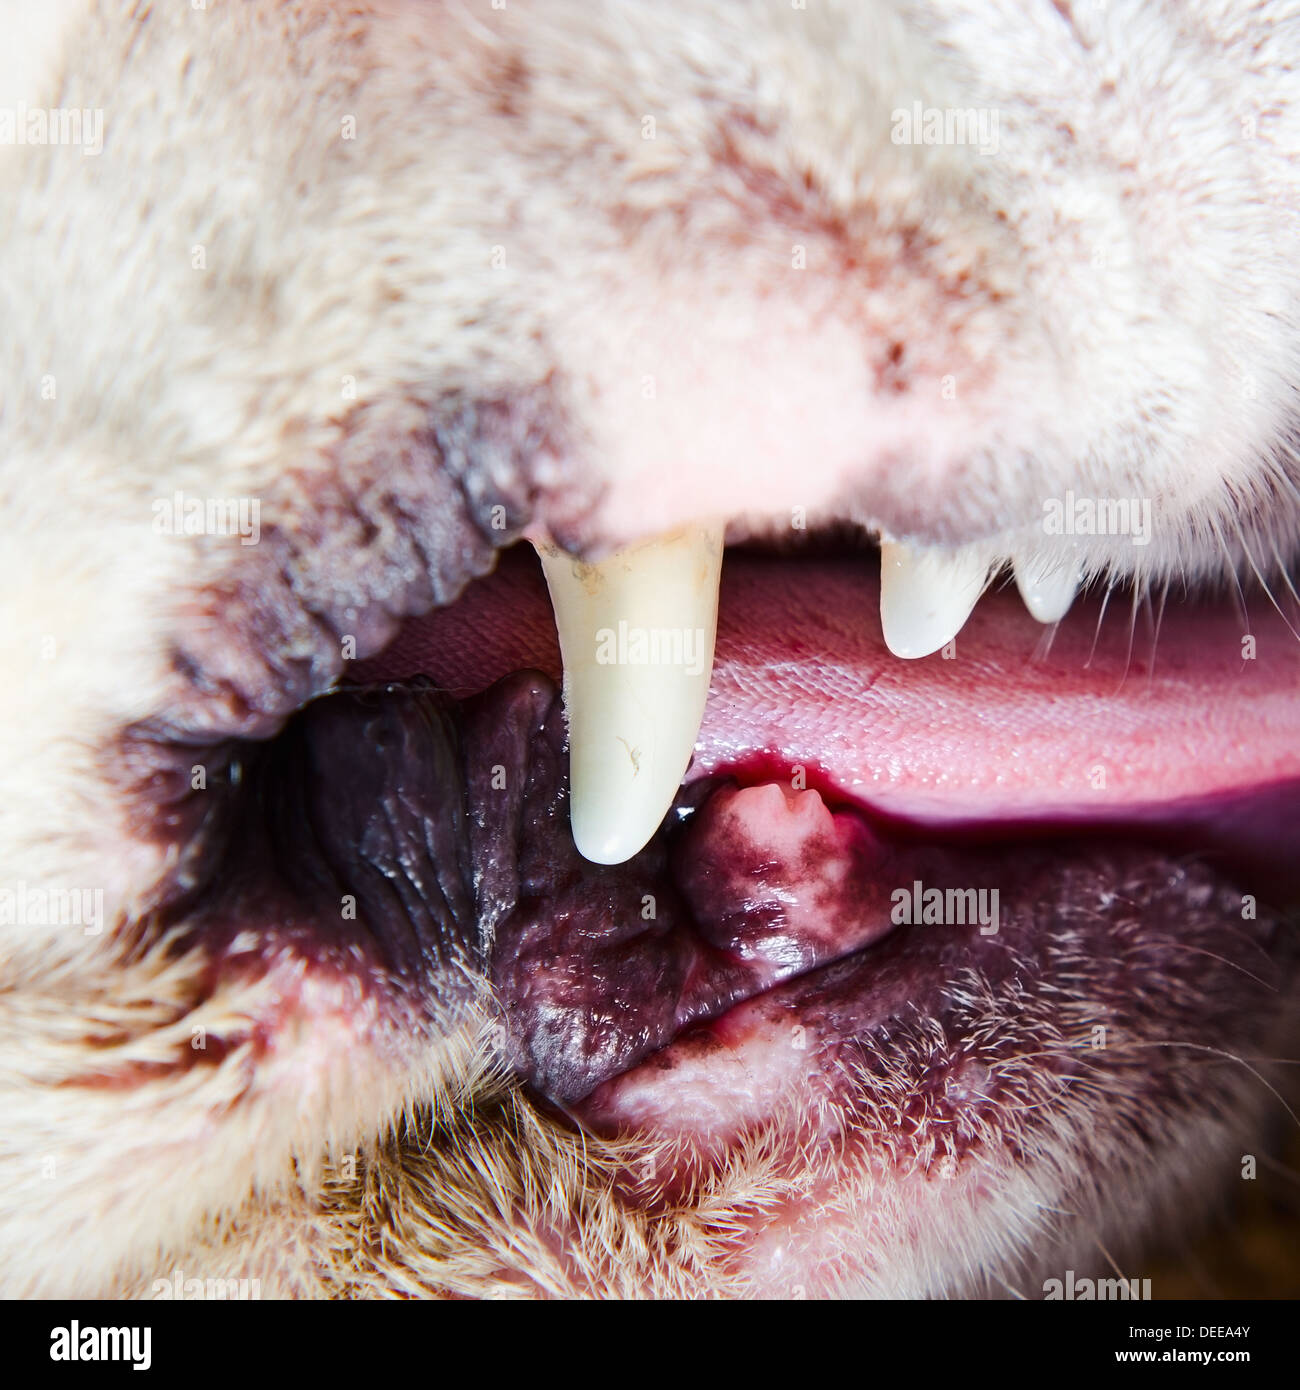 Los dientes de un perro , macro shot , se centran en un centro. Foto de stock